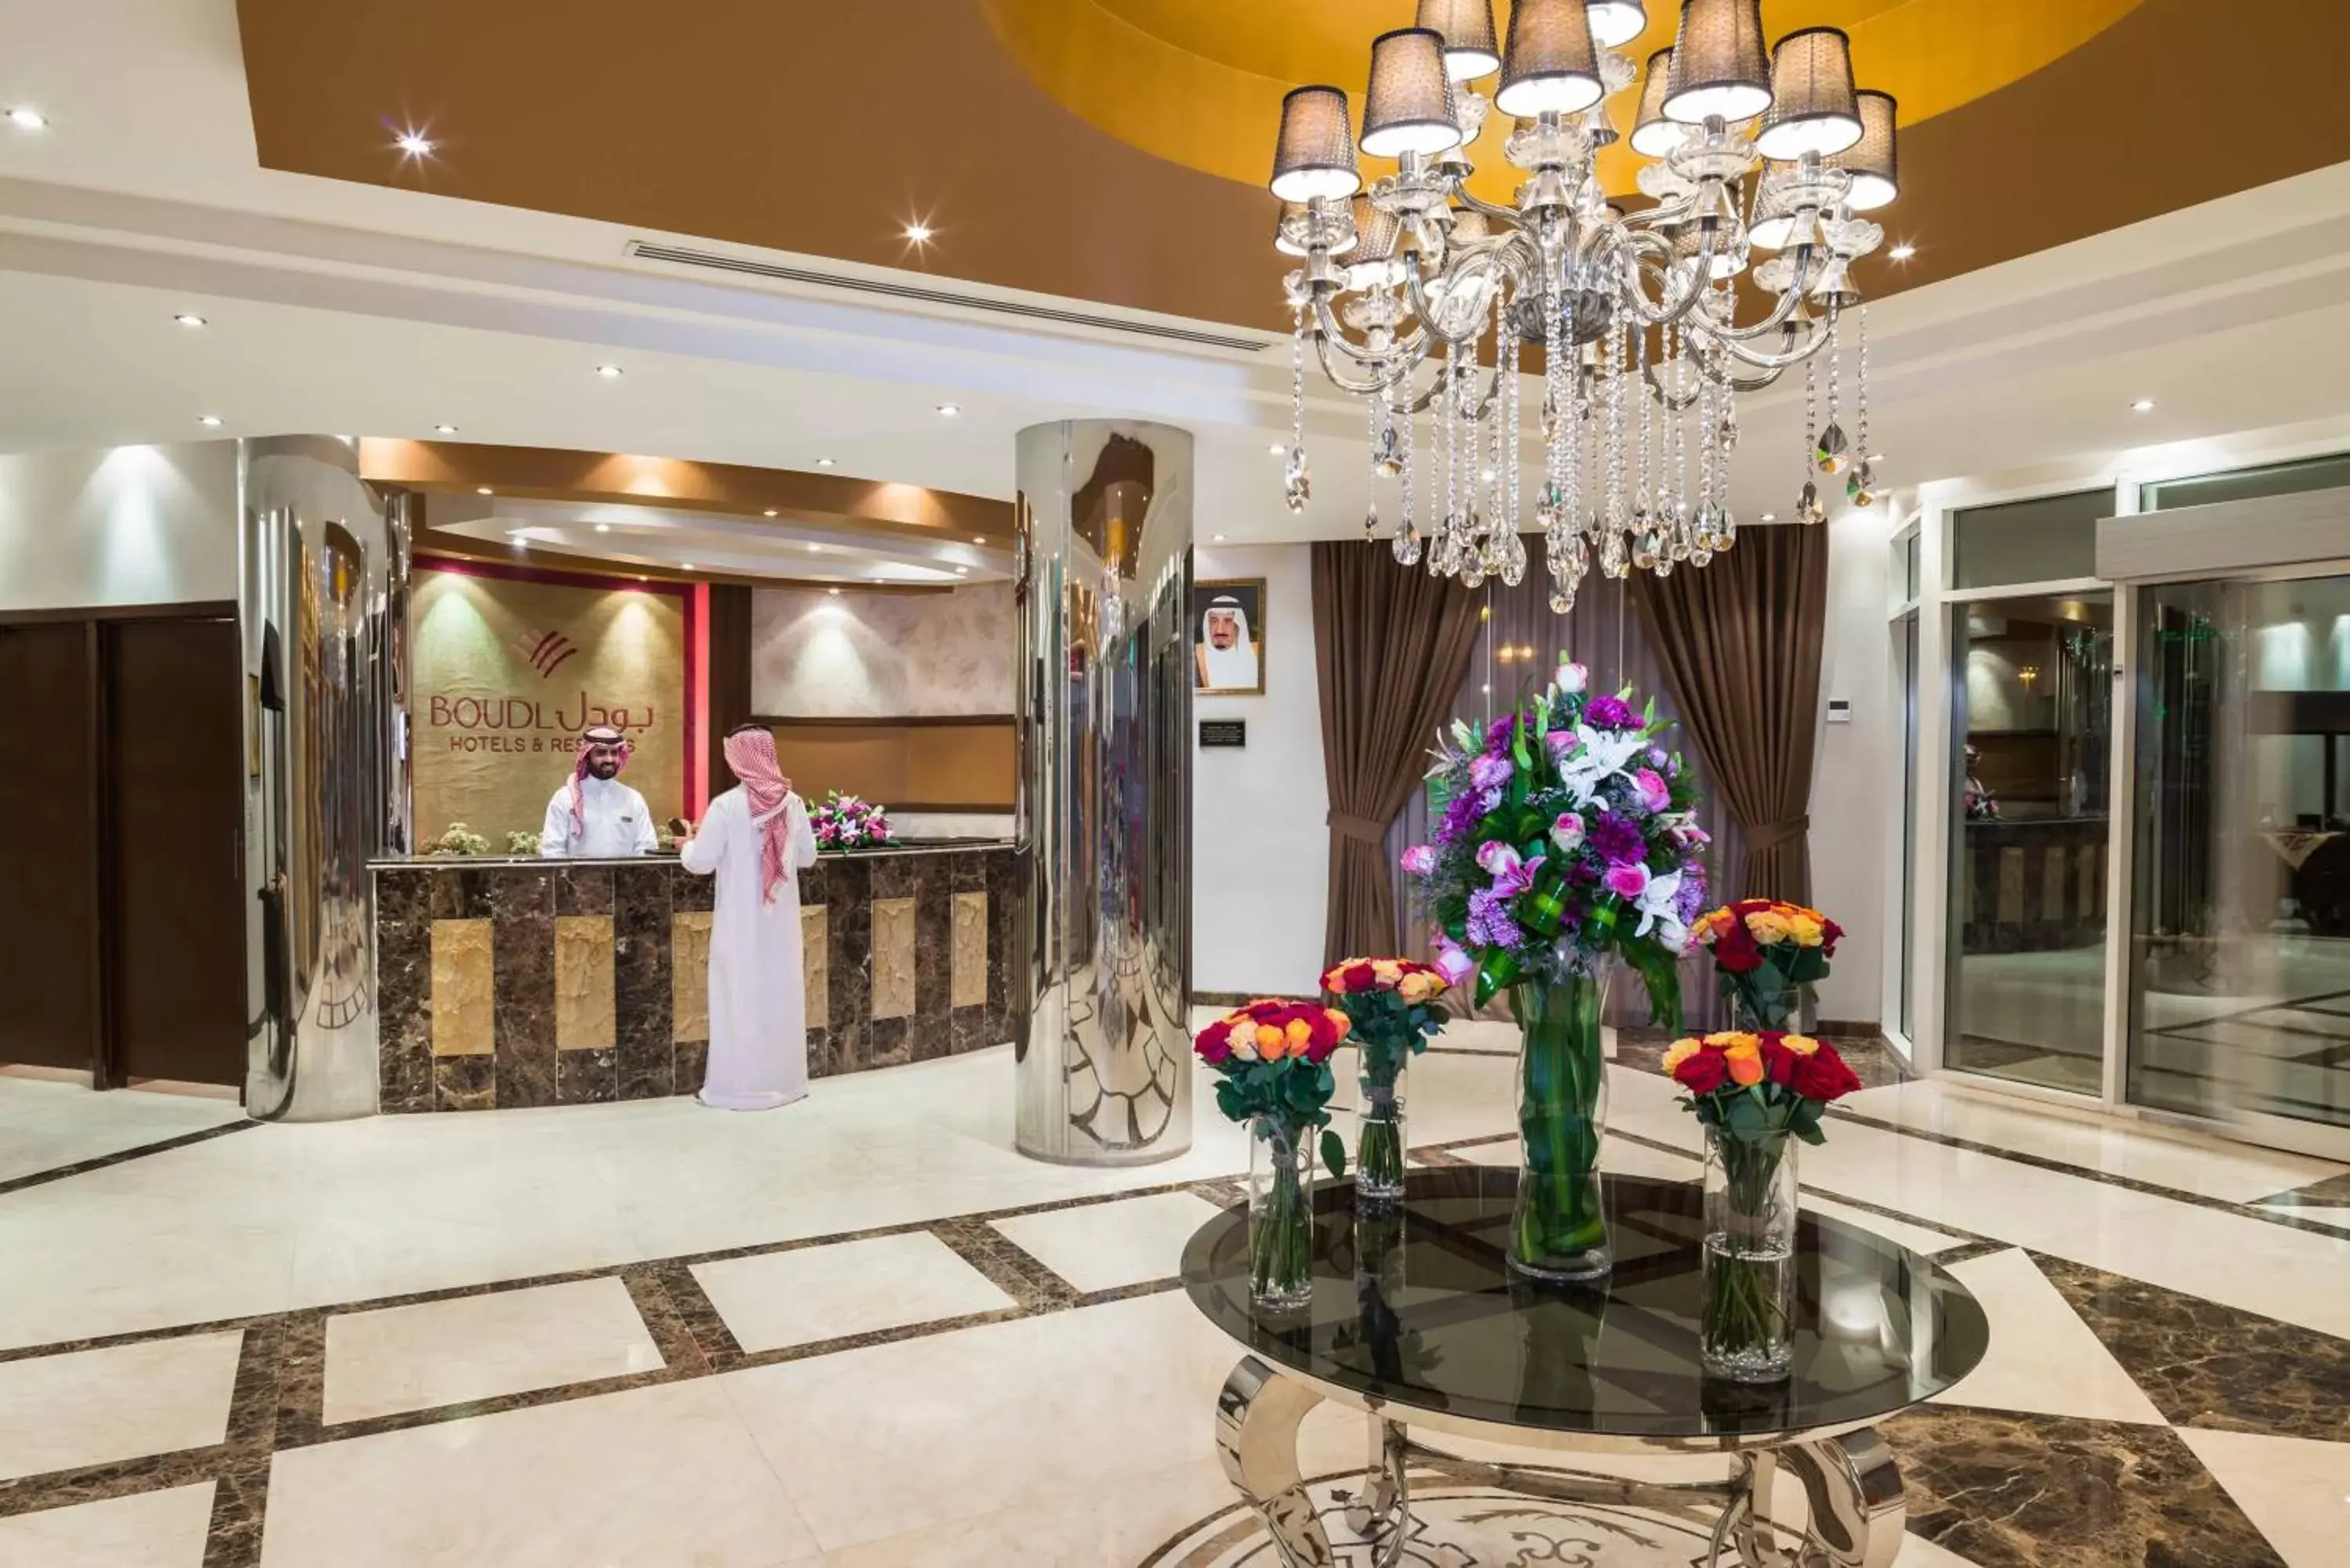 Lobby or reception, Lobby/Reception in Boudl Al Maidan